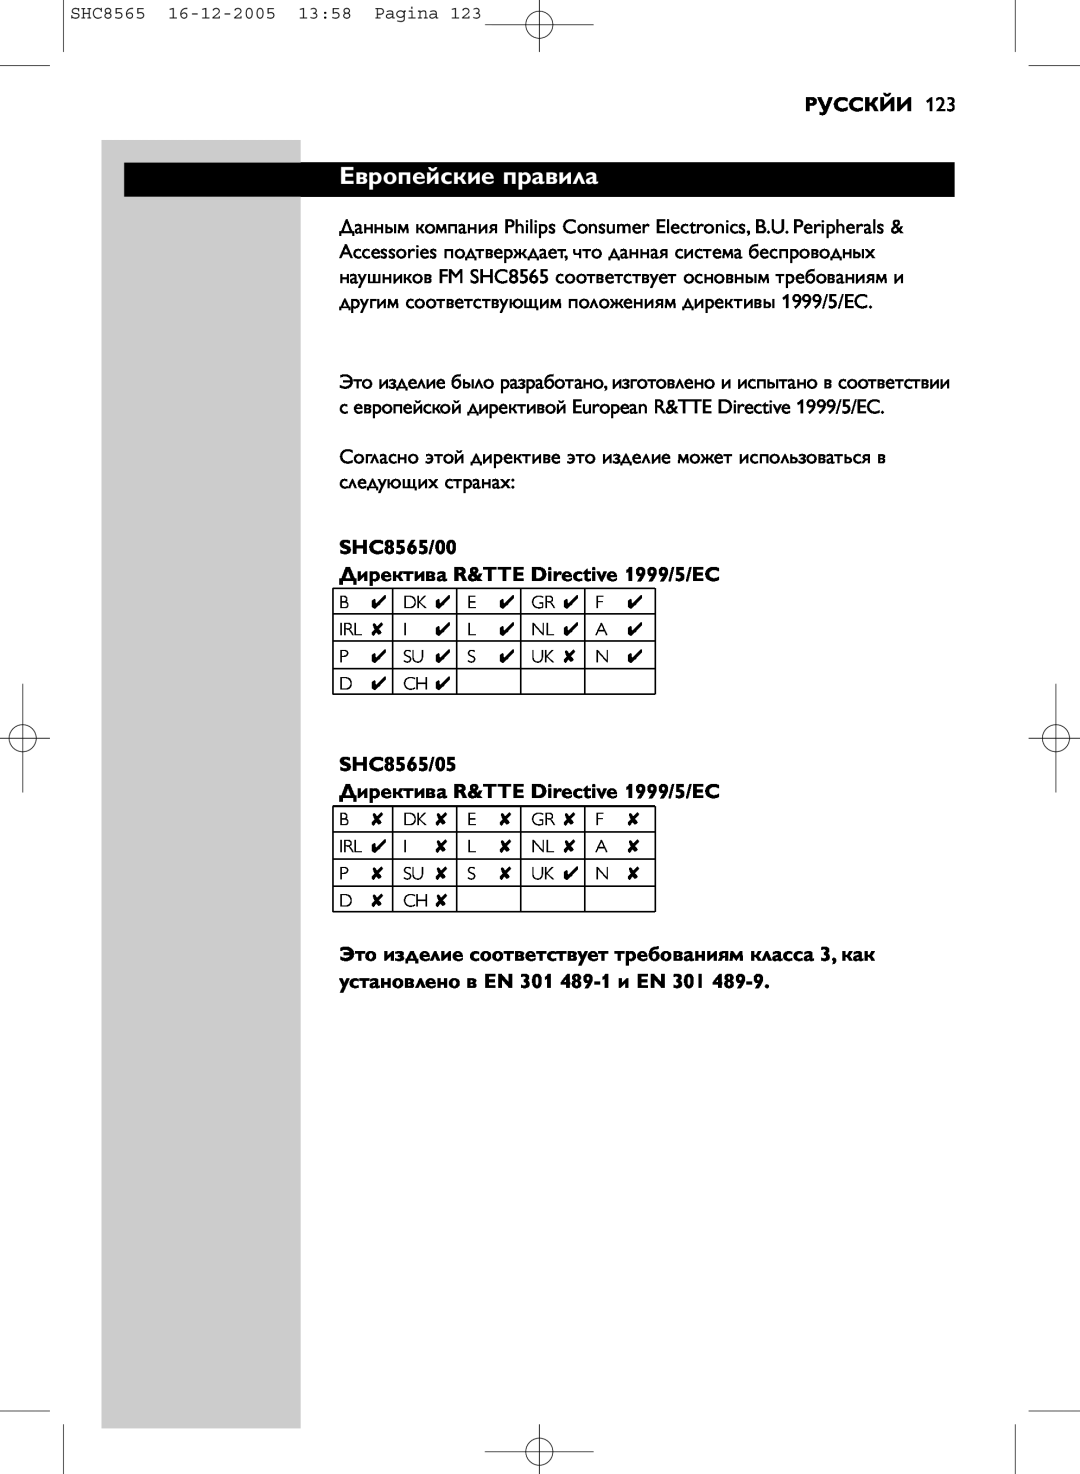 Philips manual Европейские правила, Русскйи, SHC8565/00 Директива R&TTE Directive 1999/5/EC 